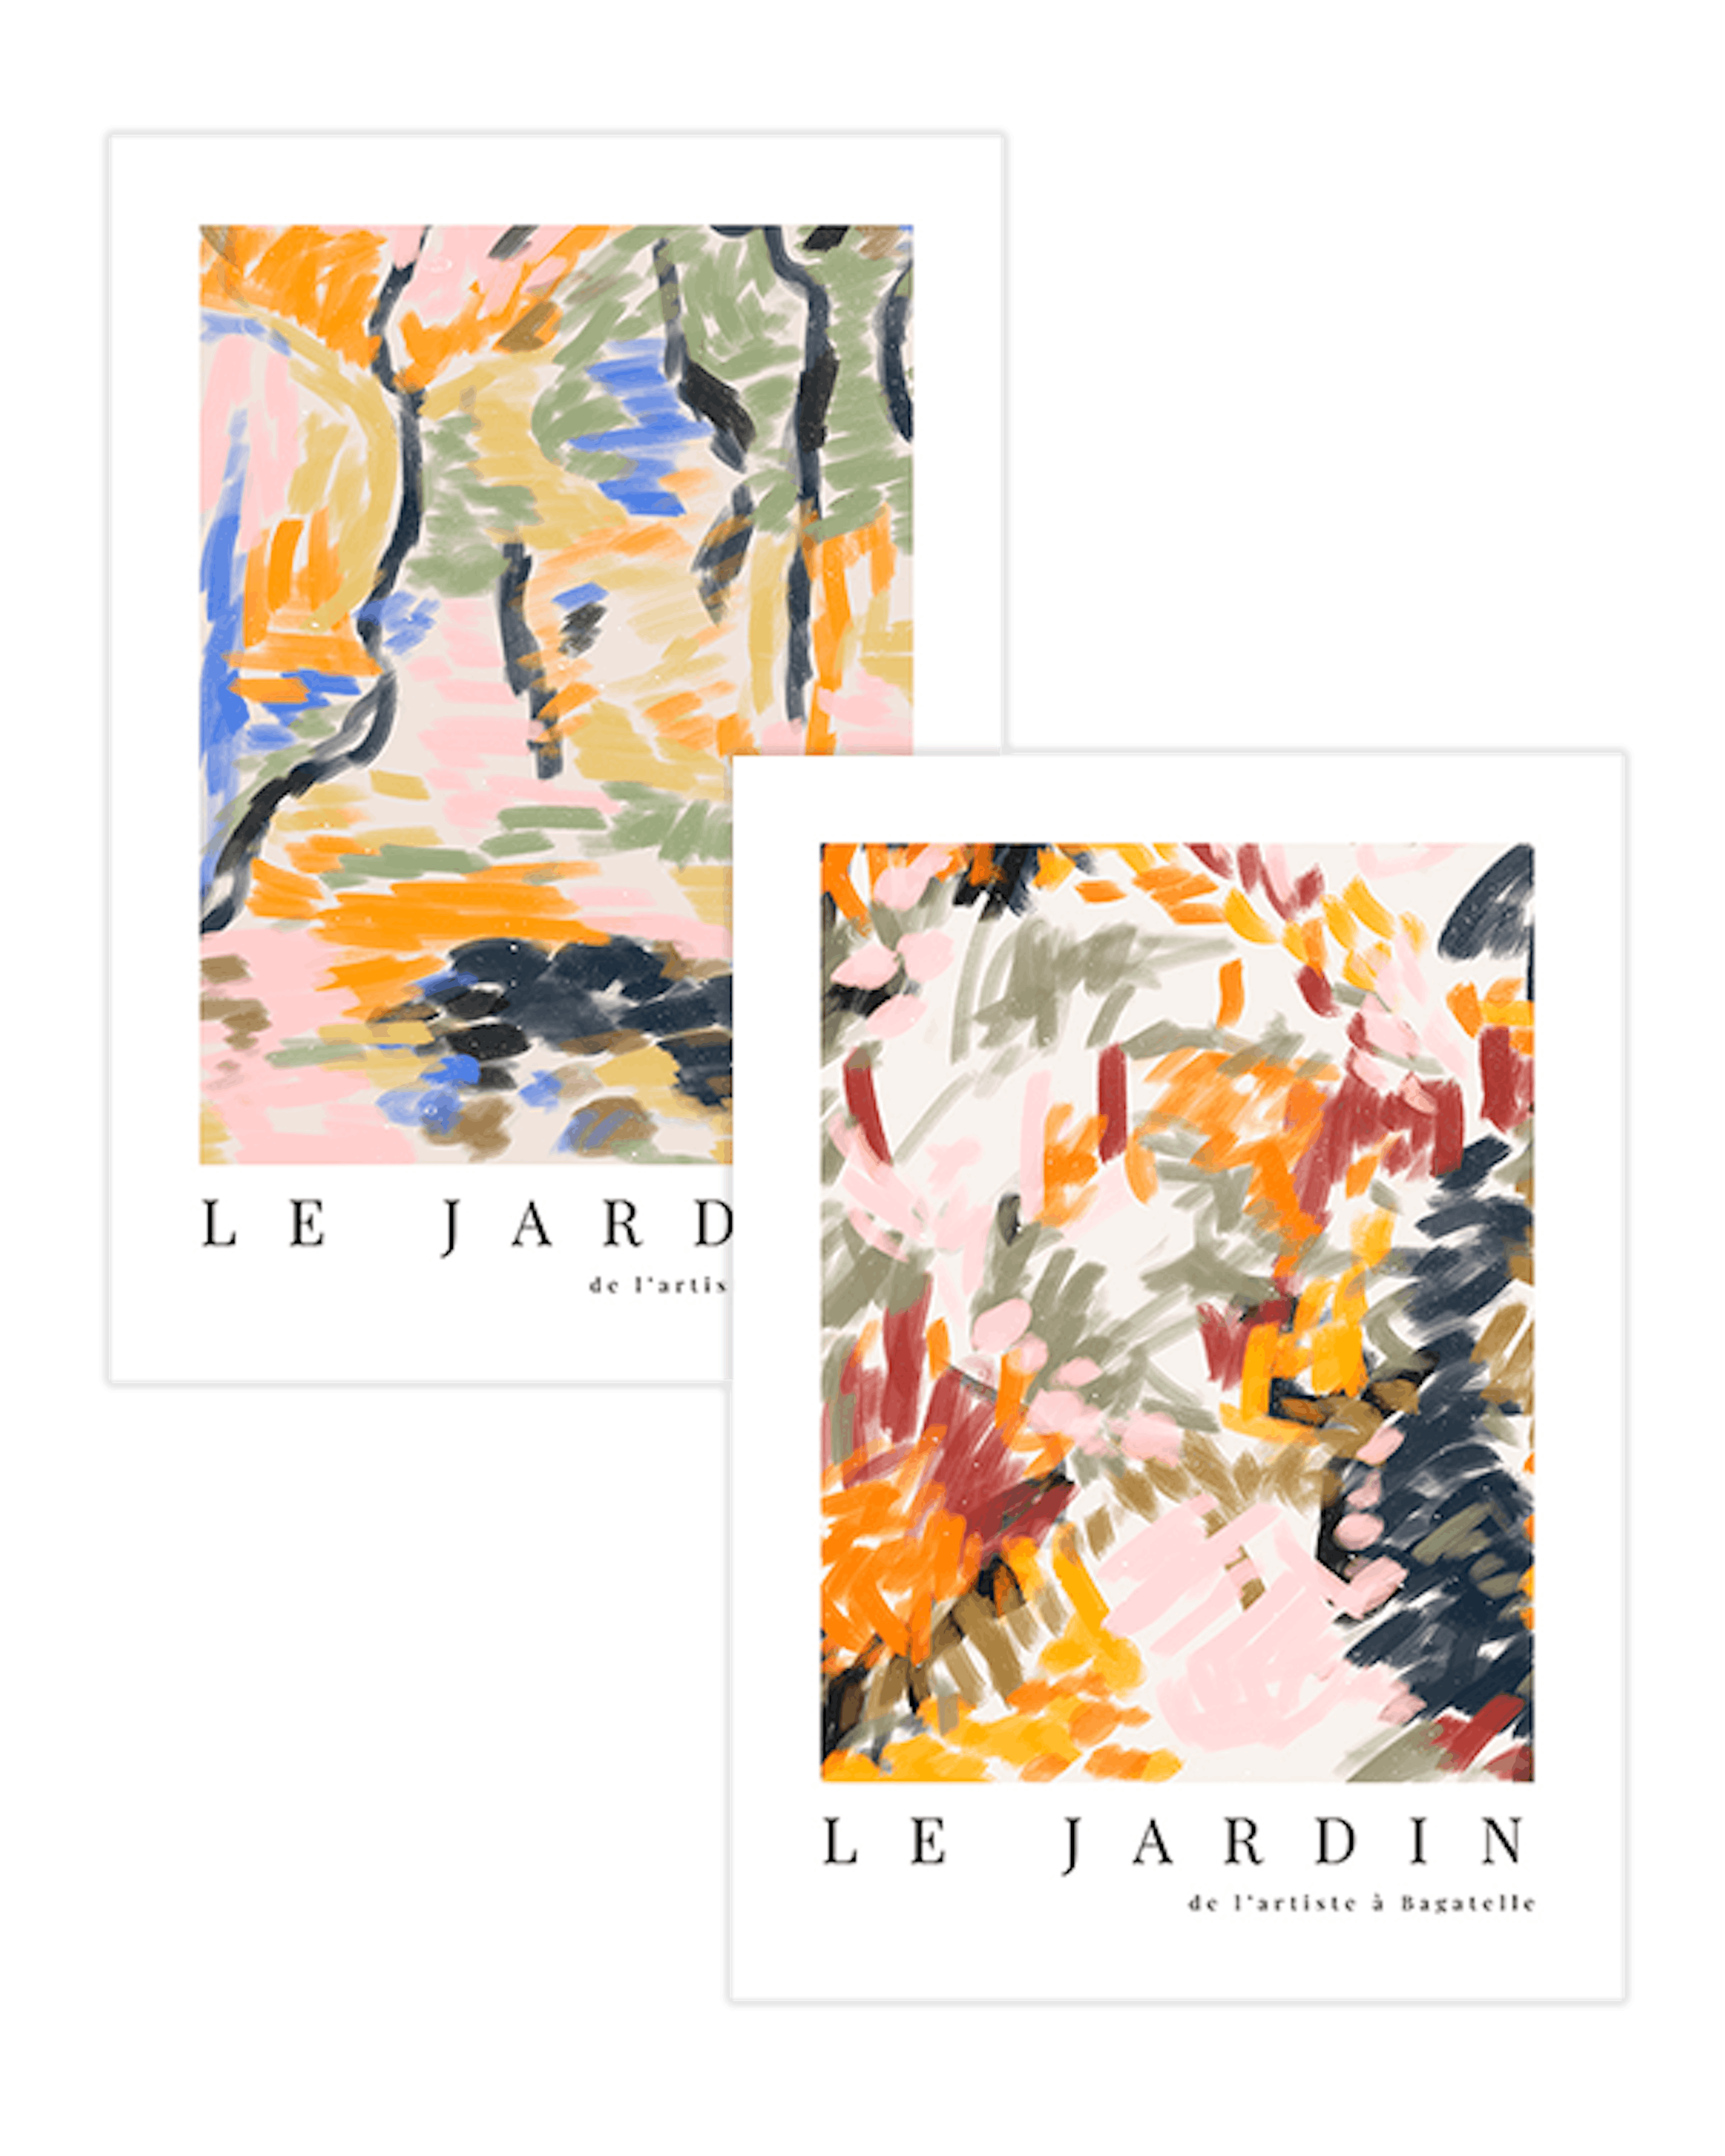 Le Jardin Duo Paquetes de pósters